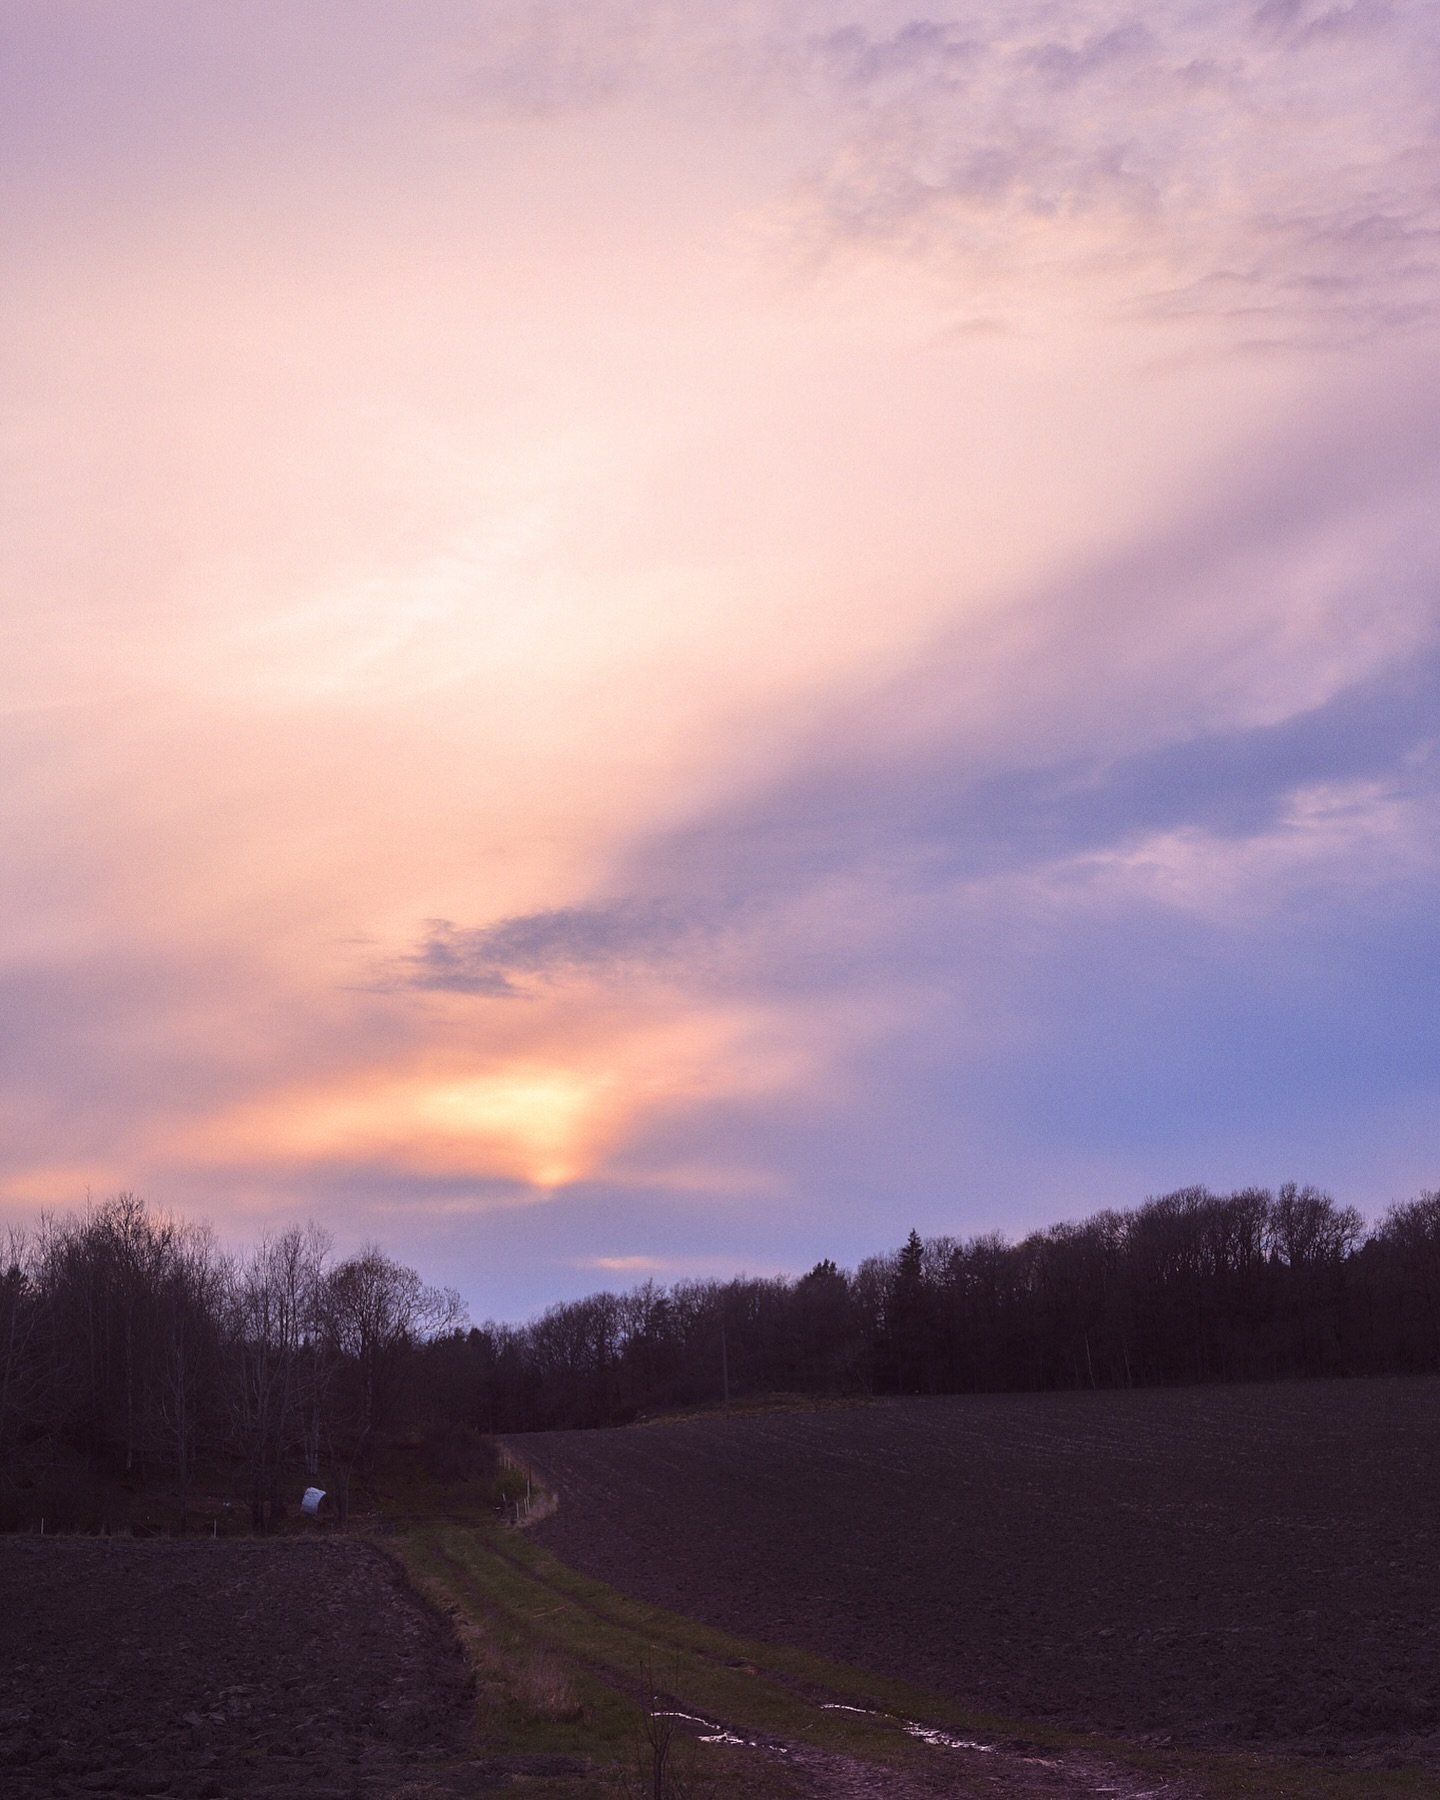 Cool sky over the fields 
.
.
.
.
#sunset #pastelsunset #soten&auml;s #vandringslederisverige #soteleden #soteledentrail #tossene #zenscape_photography #m&ouml;h&auml;llernsg&aring;rd